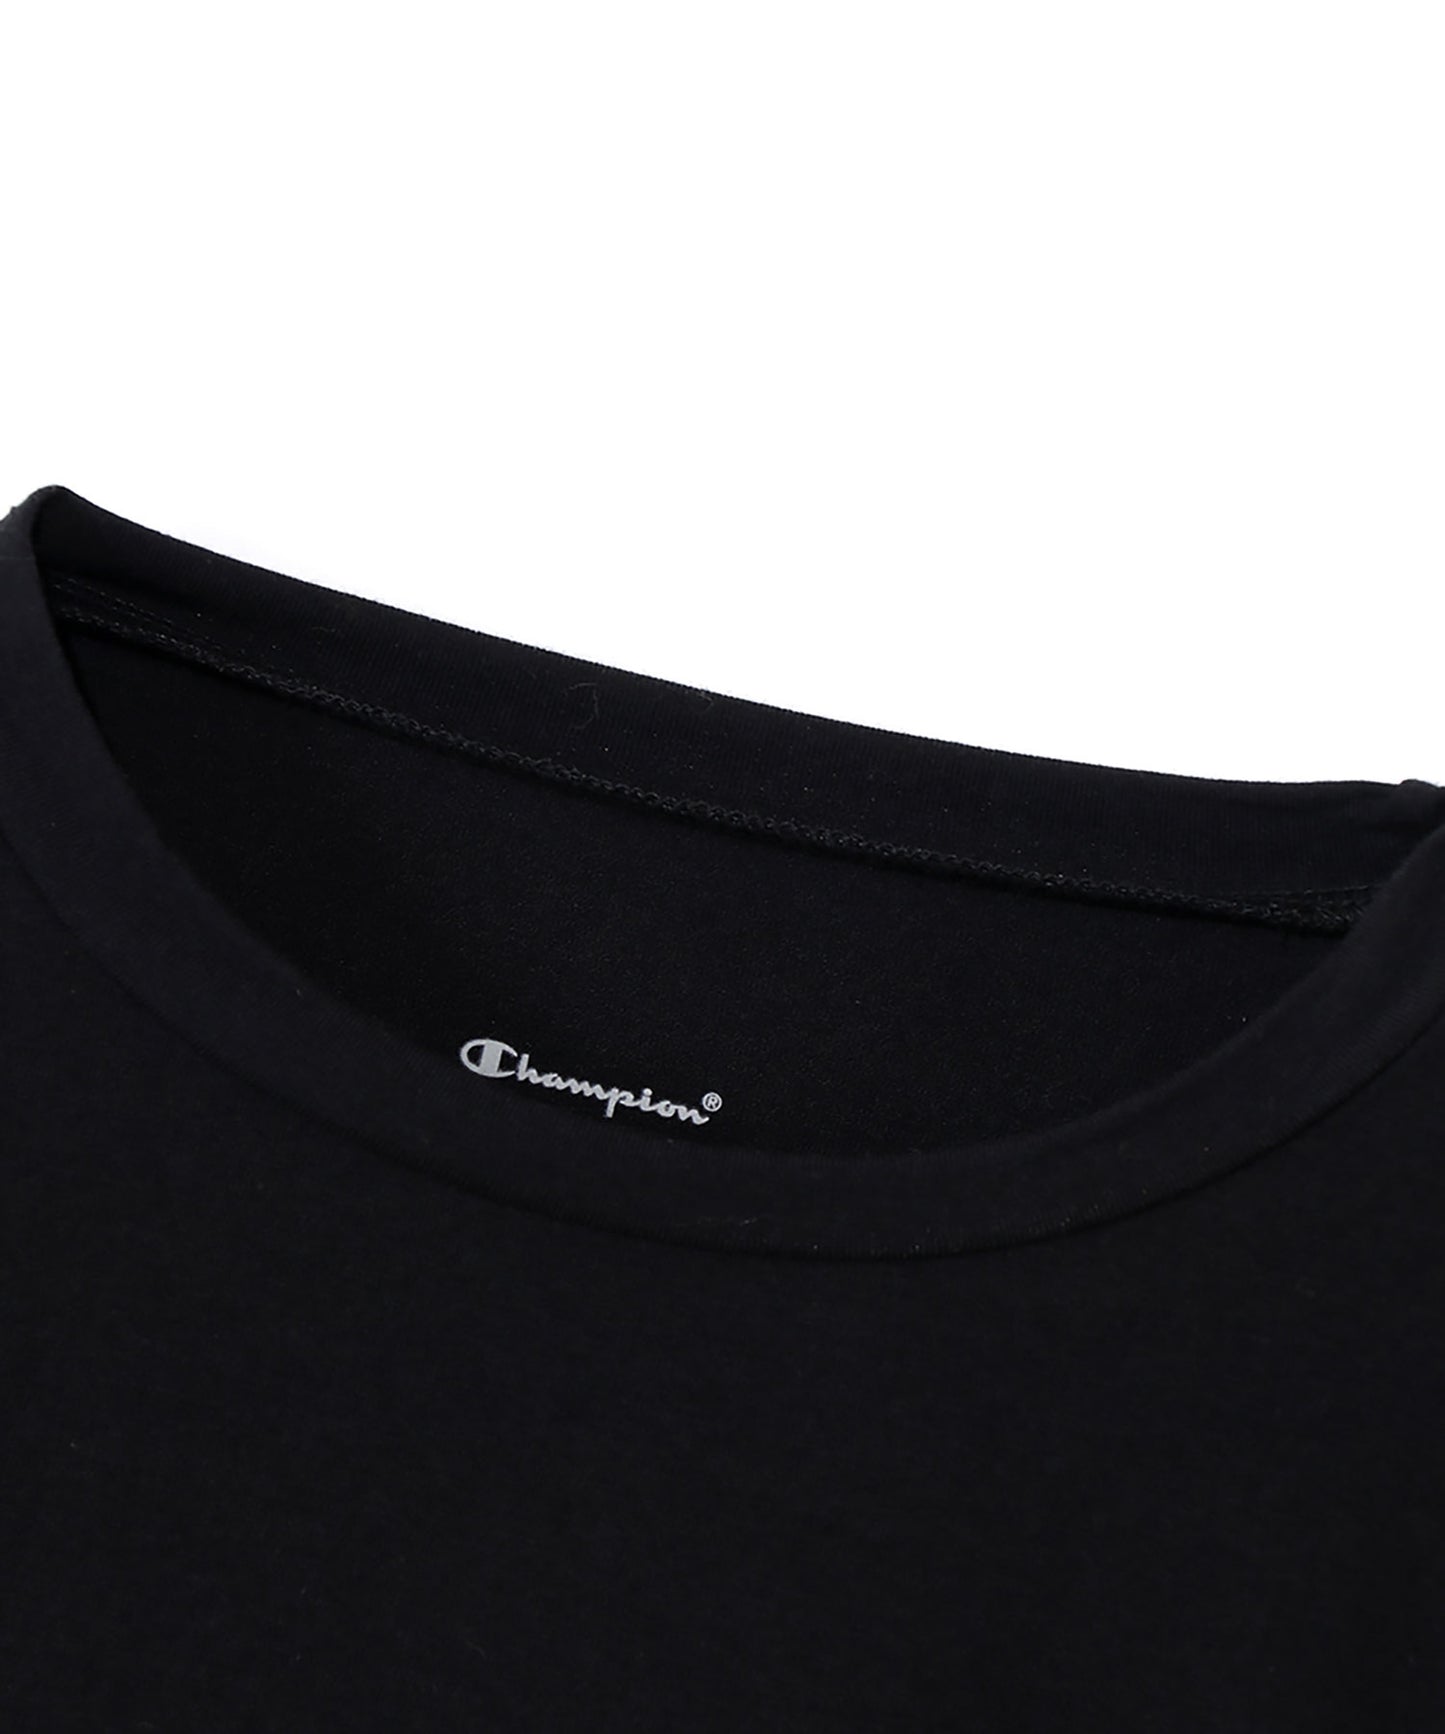 クルーネックロングTシャツ (CW4-Q501)  | メンズ | 1枚 | CW4-Q501 | オックスフォードグレー